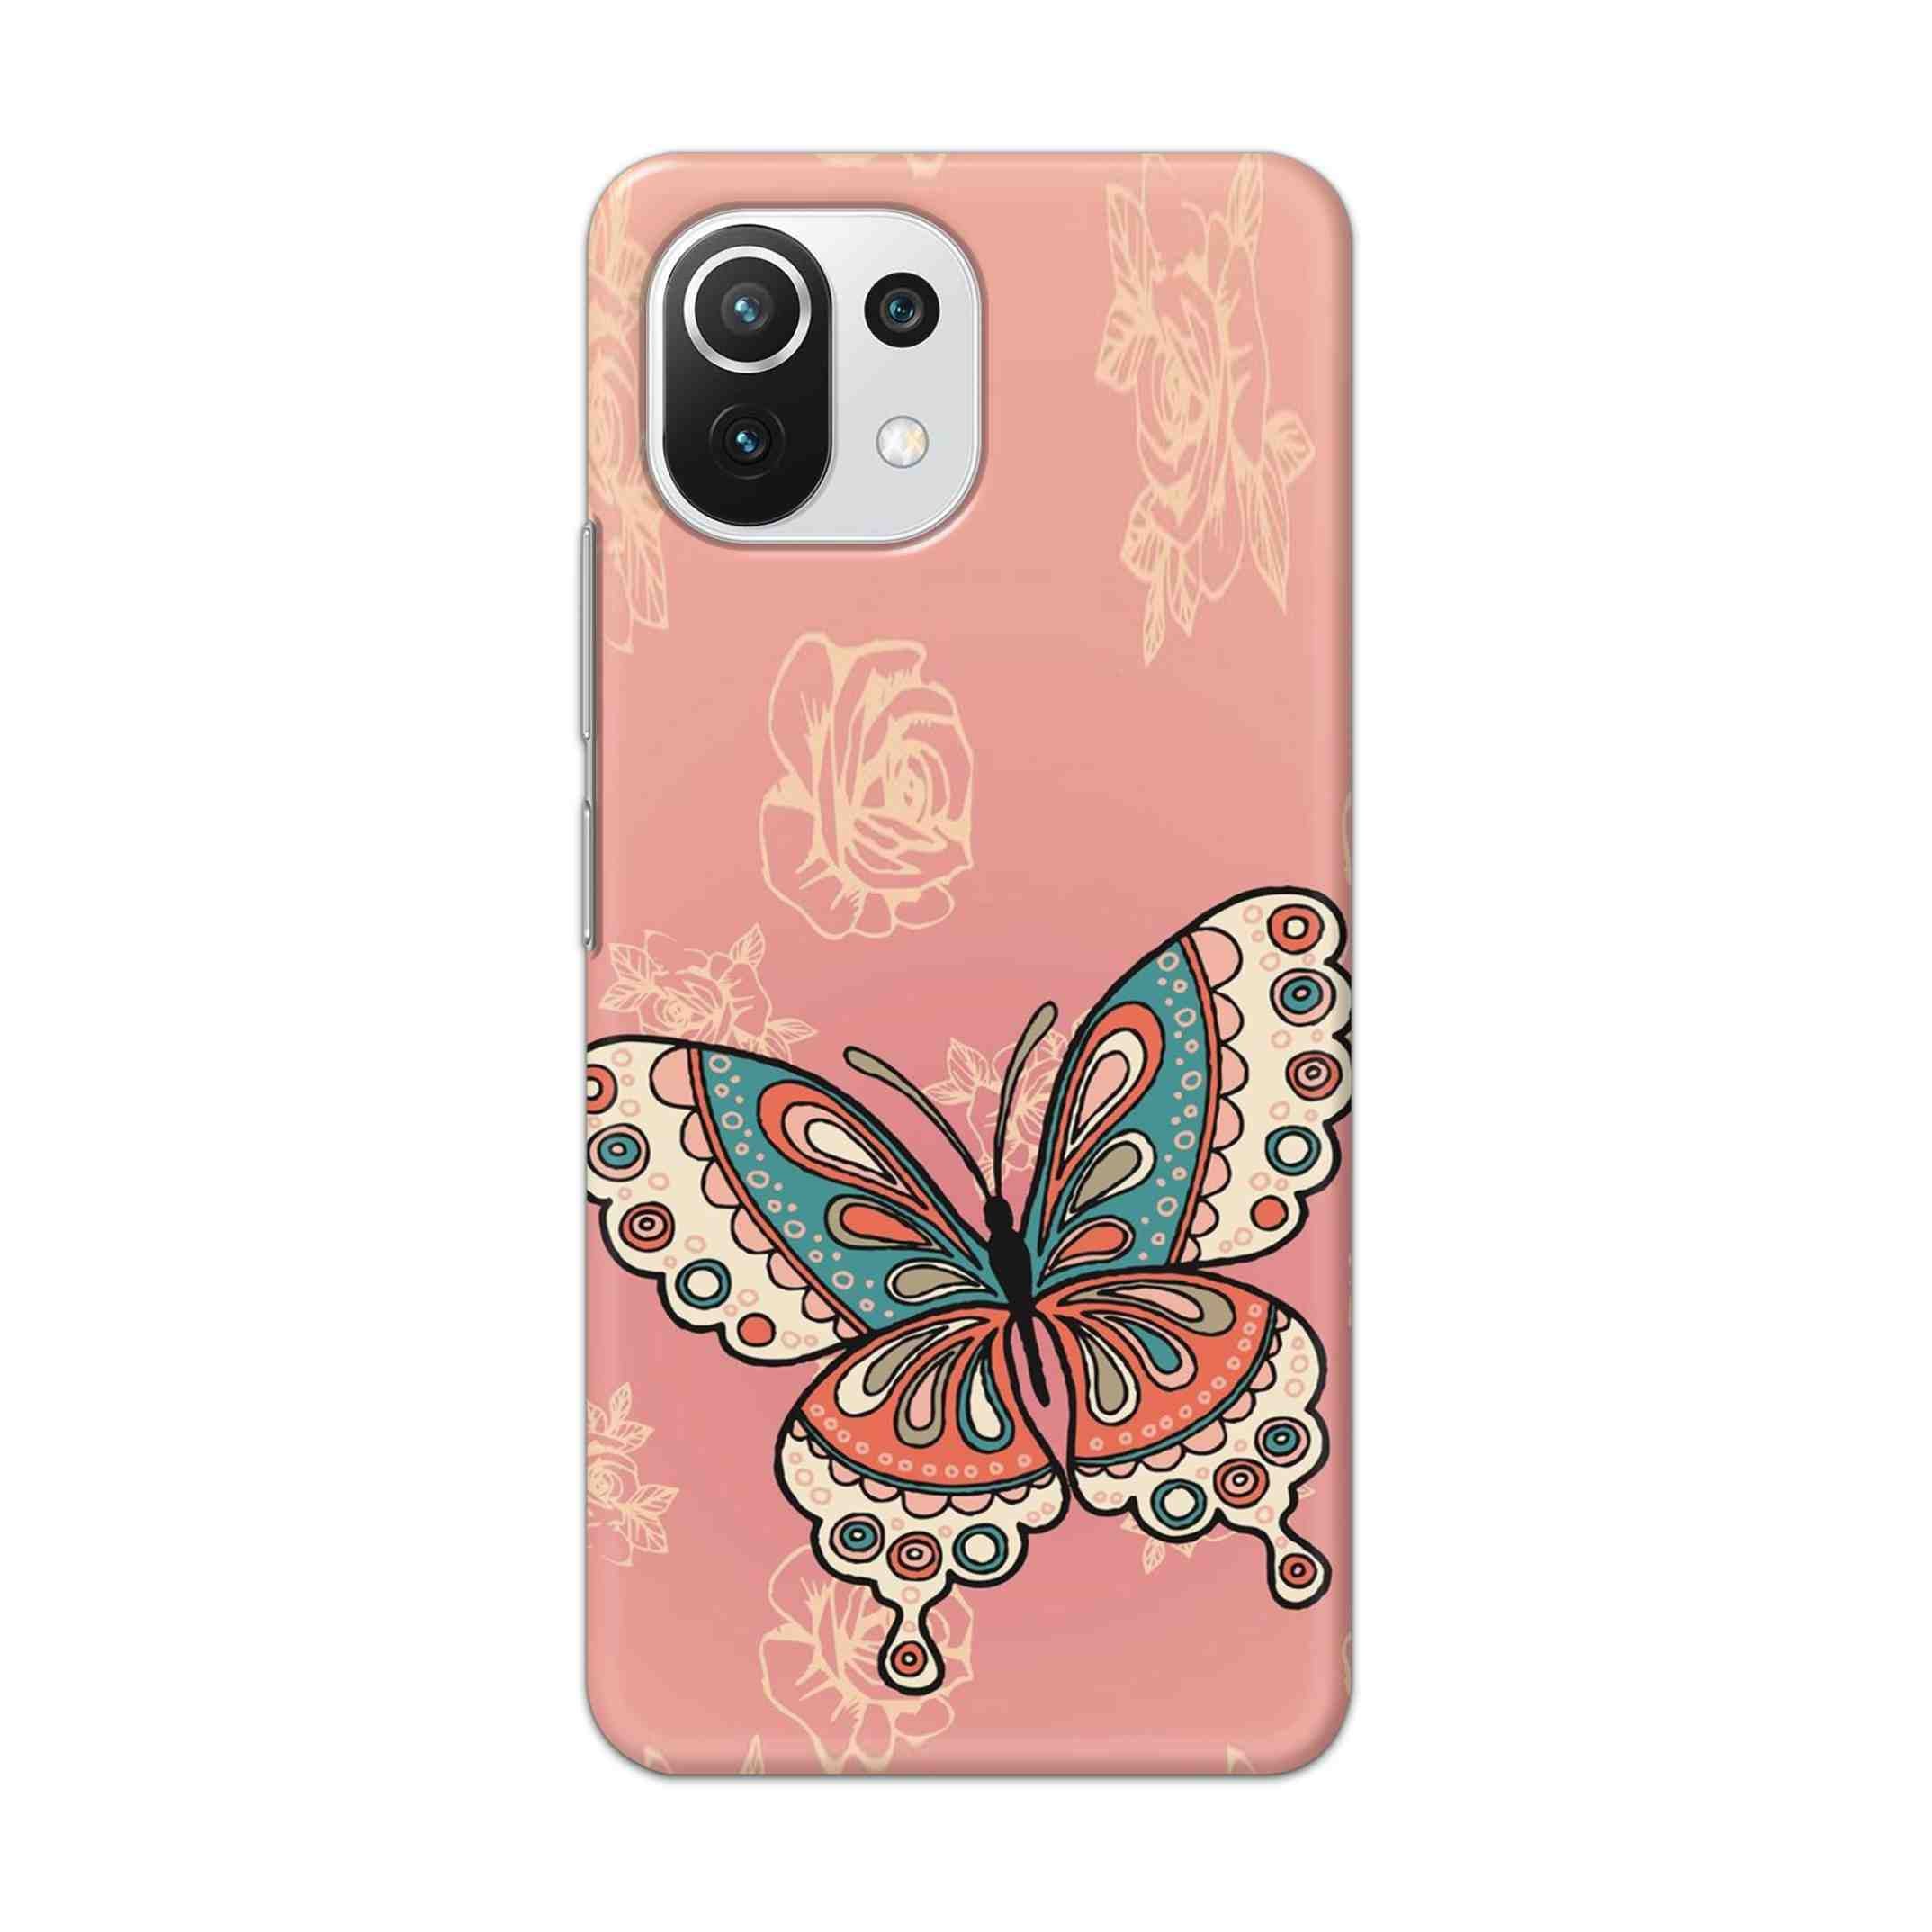 Buy Butterfly Hard Back Mobile Phone Case Cover For Mi 11 Lite NE 5G Online